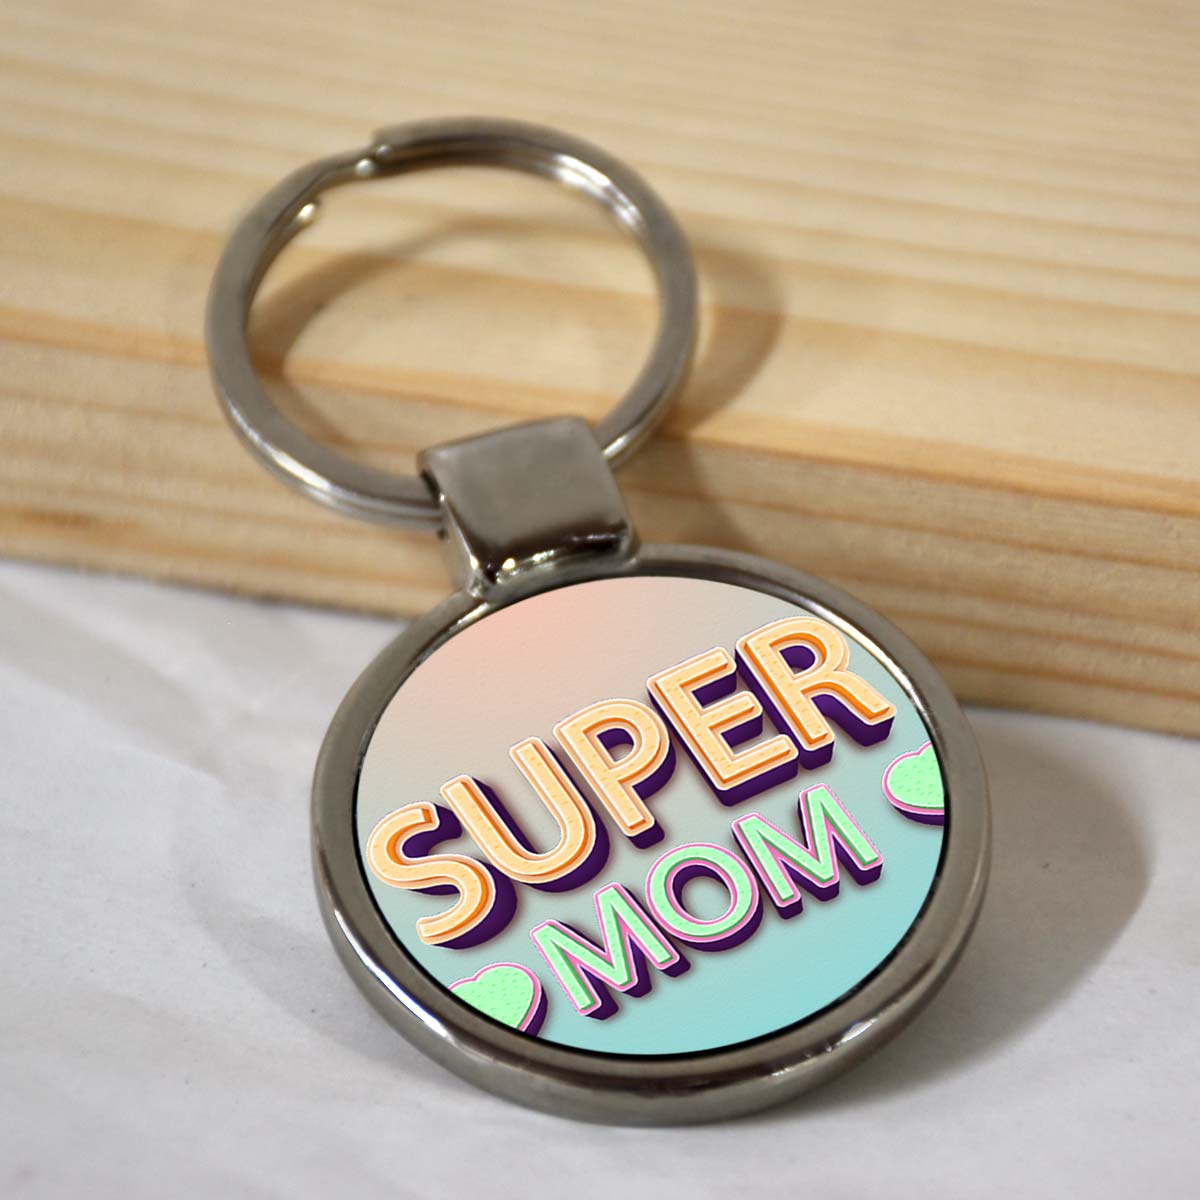 My Super Mom Round Metal Keychain-1